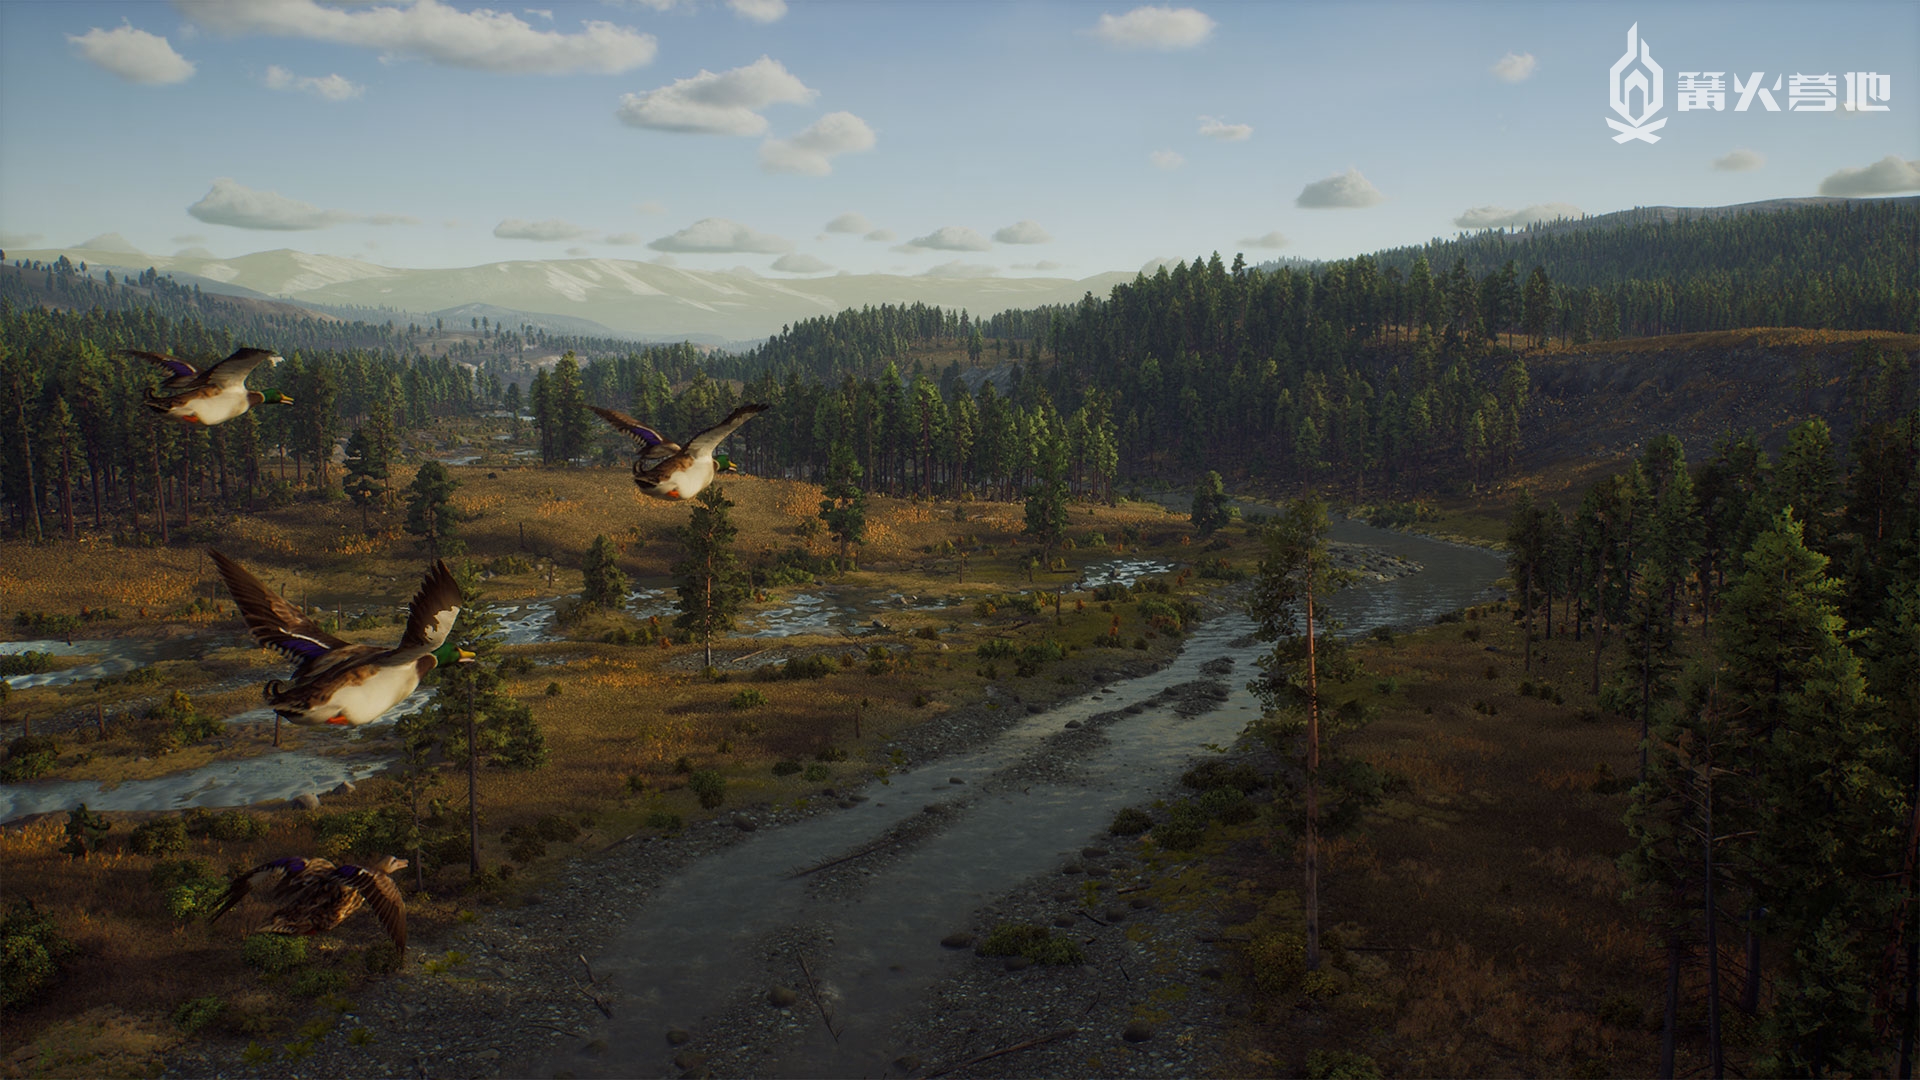 开放世界狩猎游戏《猎人之路》8 月登陆 PS5/SXS/Steam